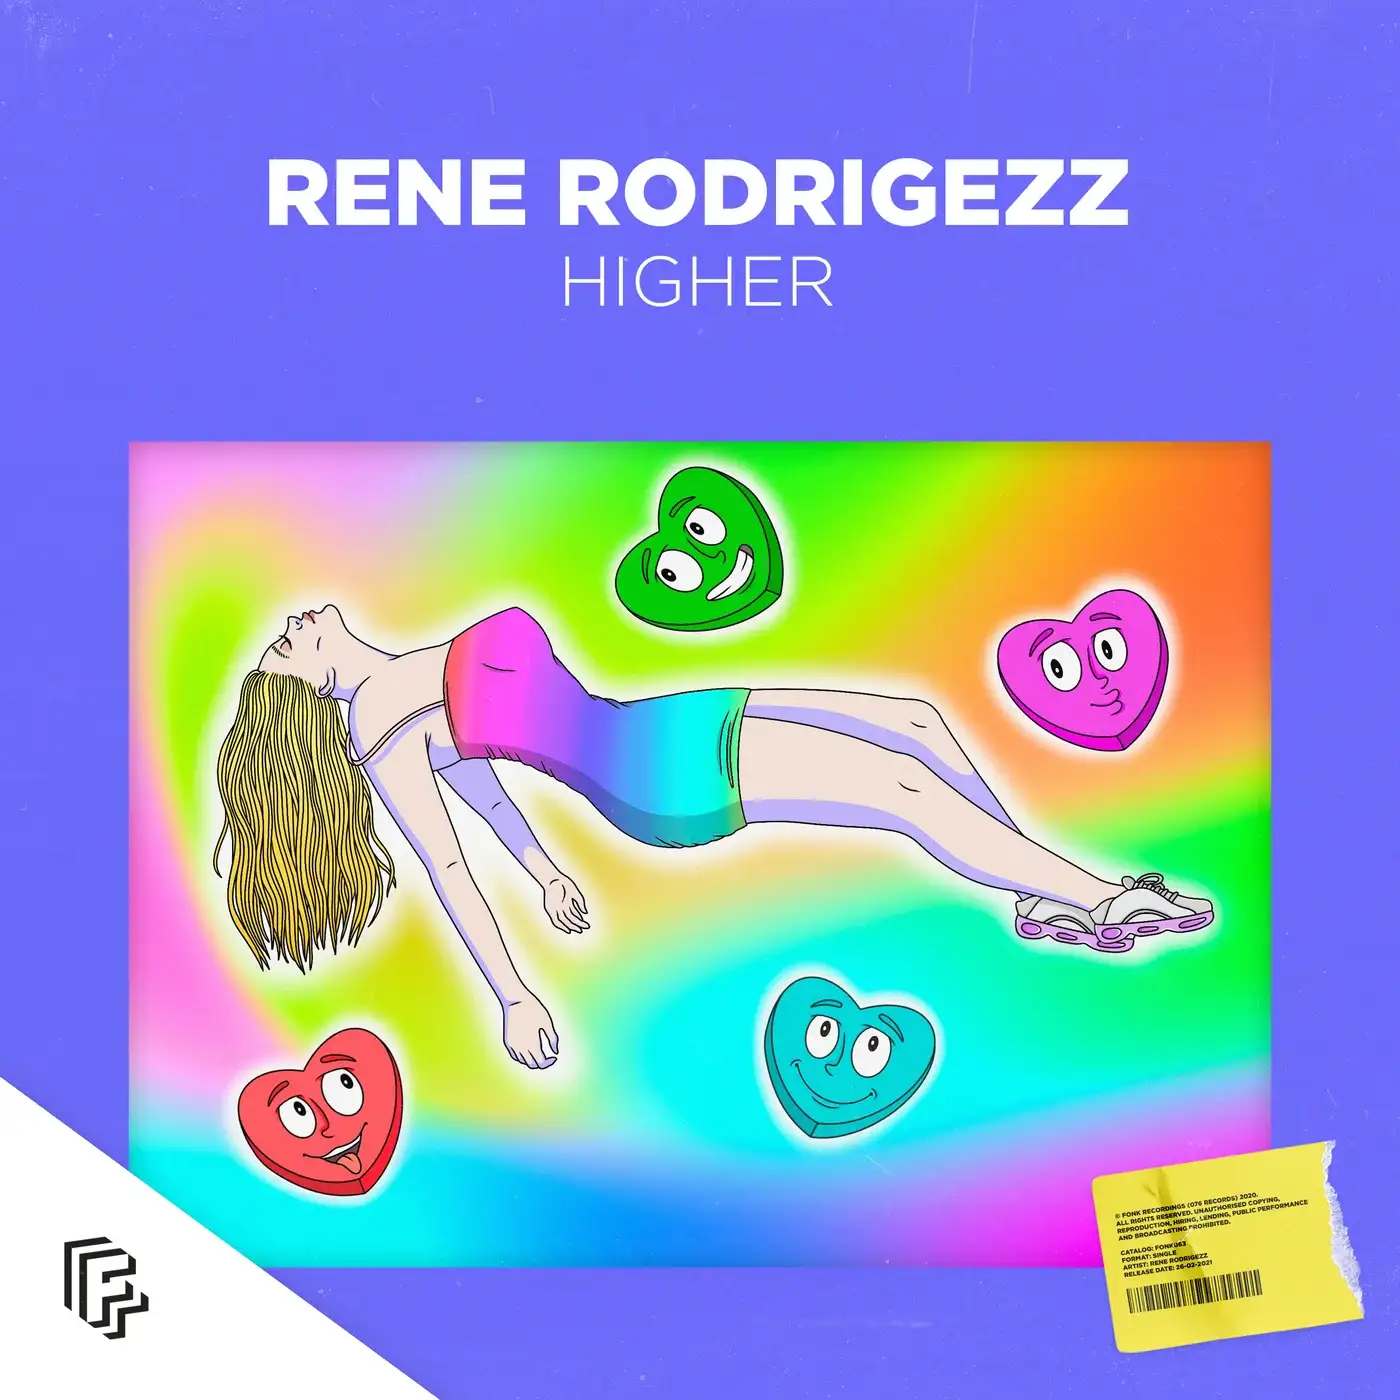 Rene Rodrigezz 